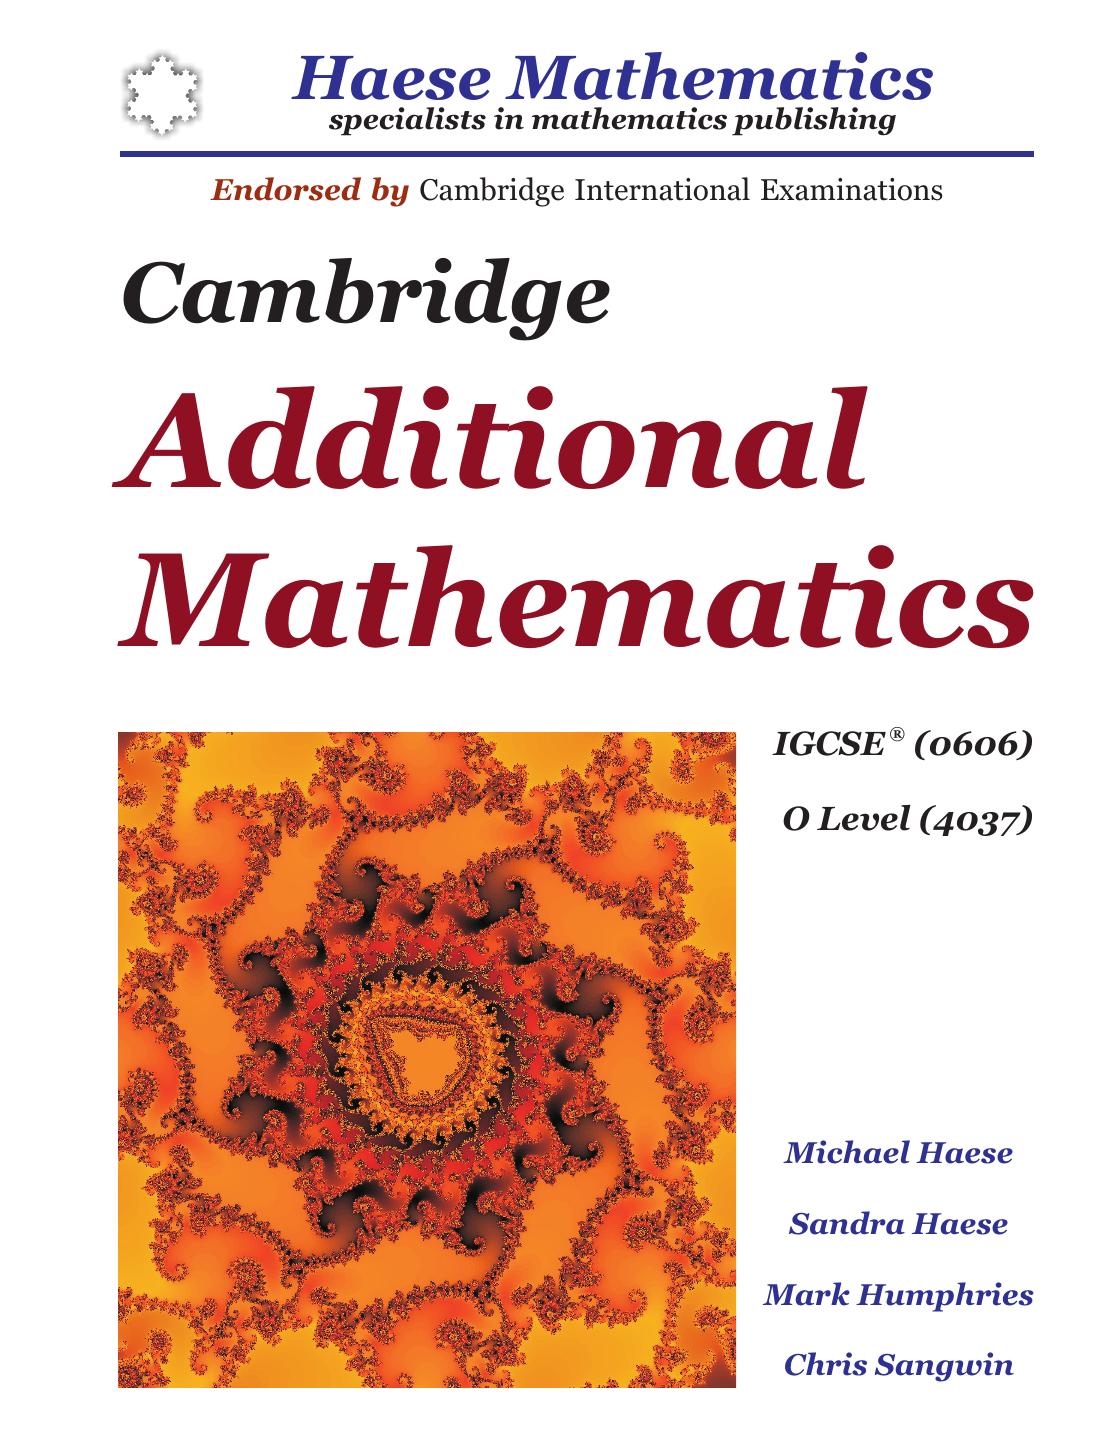 Cambridge Additional Mathematics IGCSE (0606): O Level (4037)